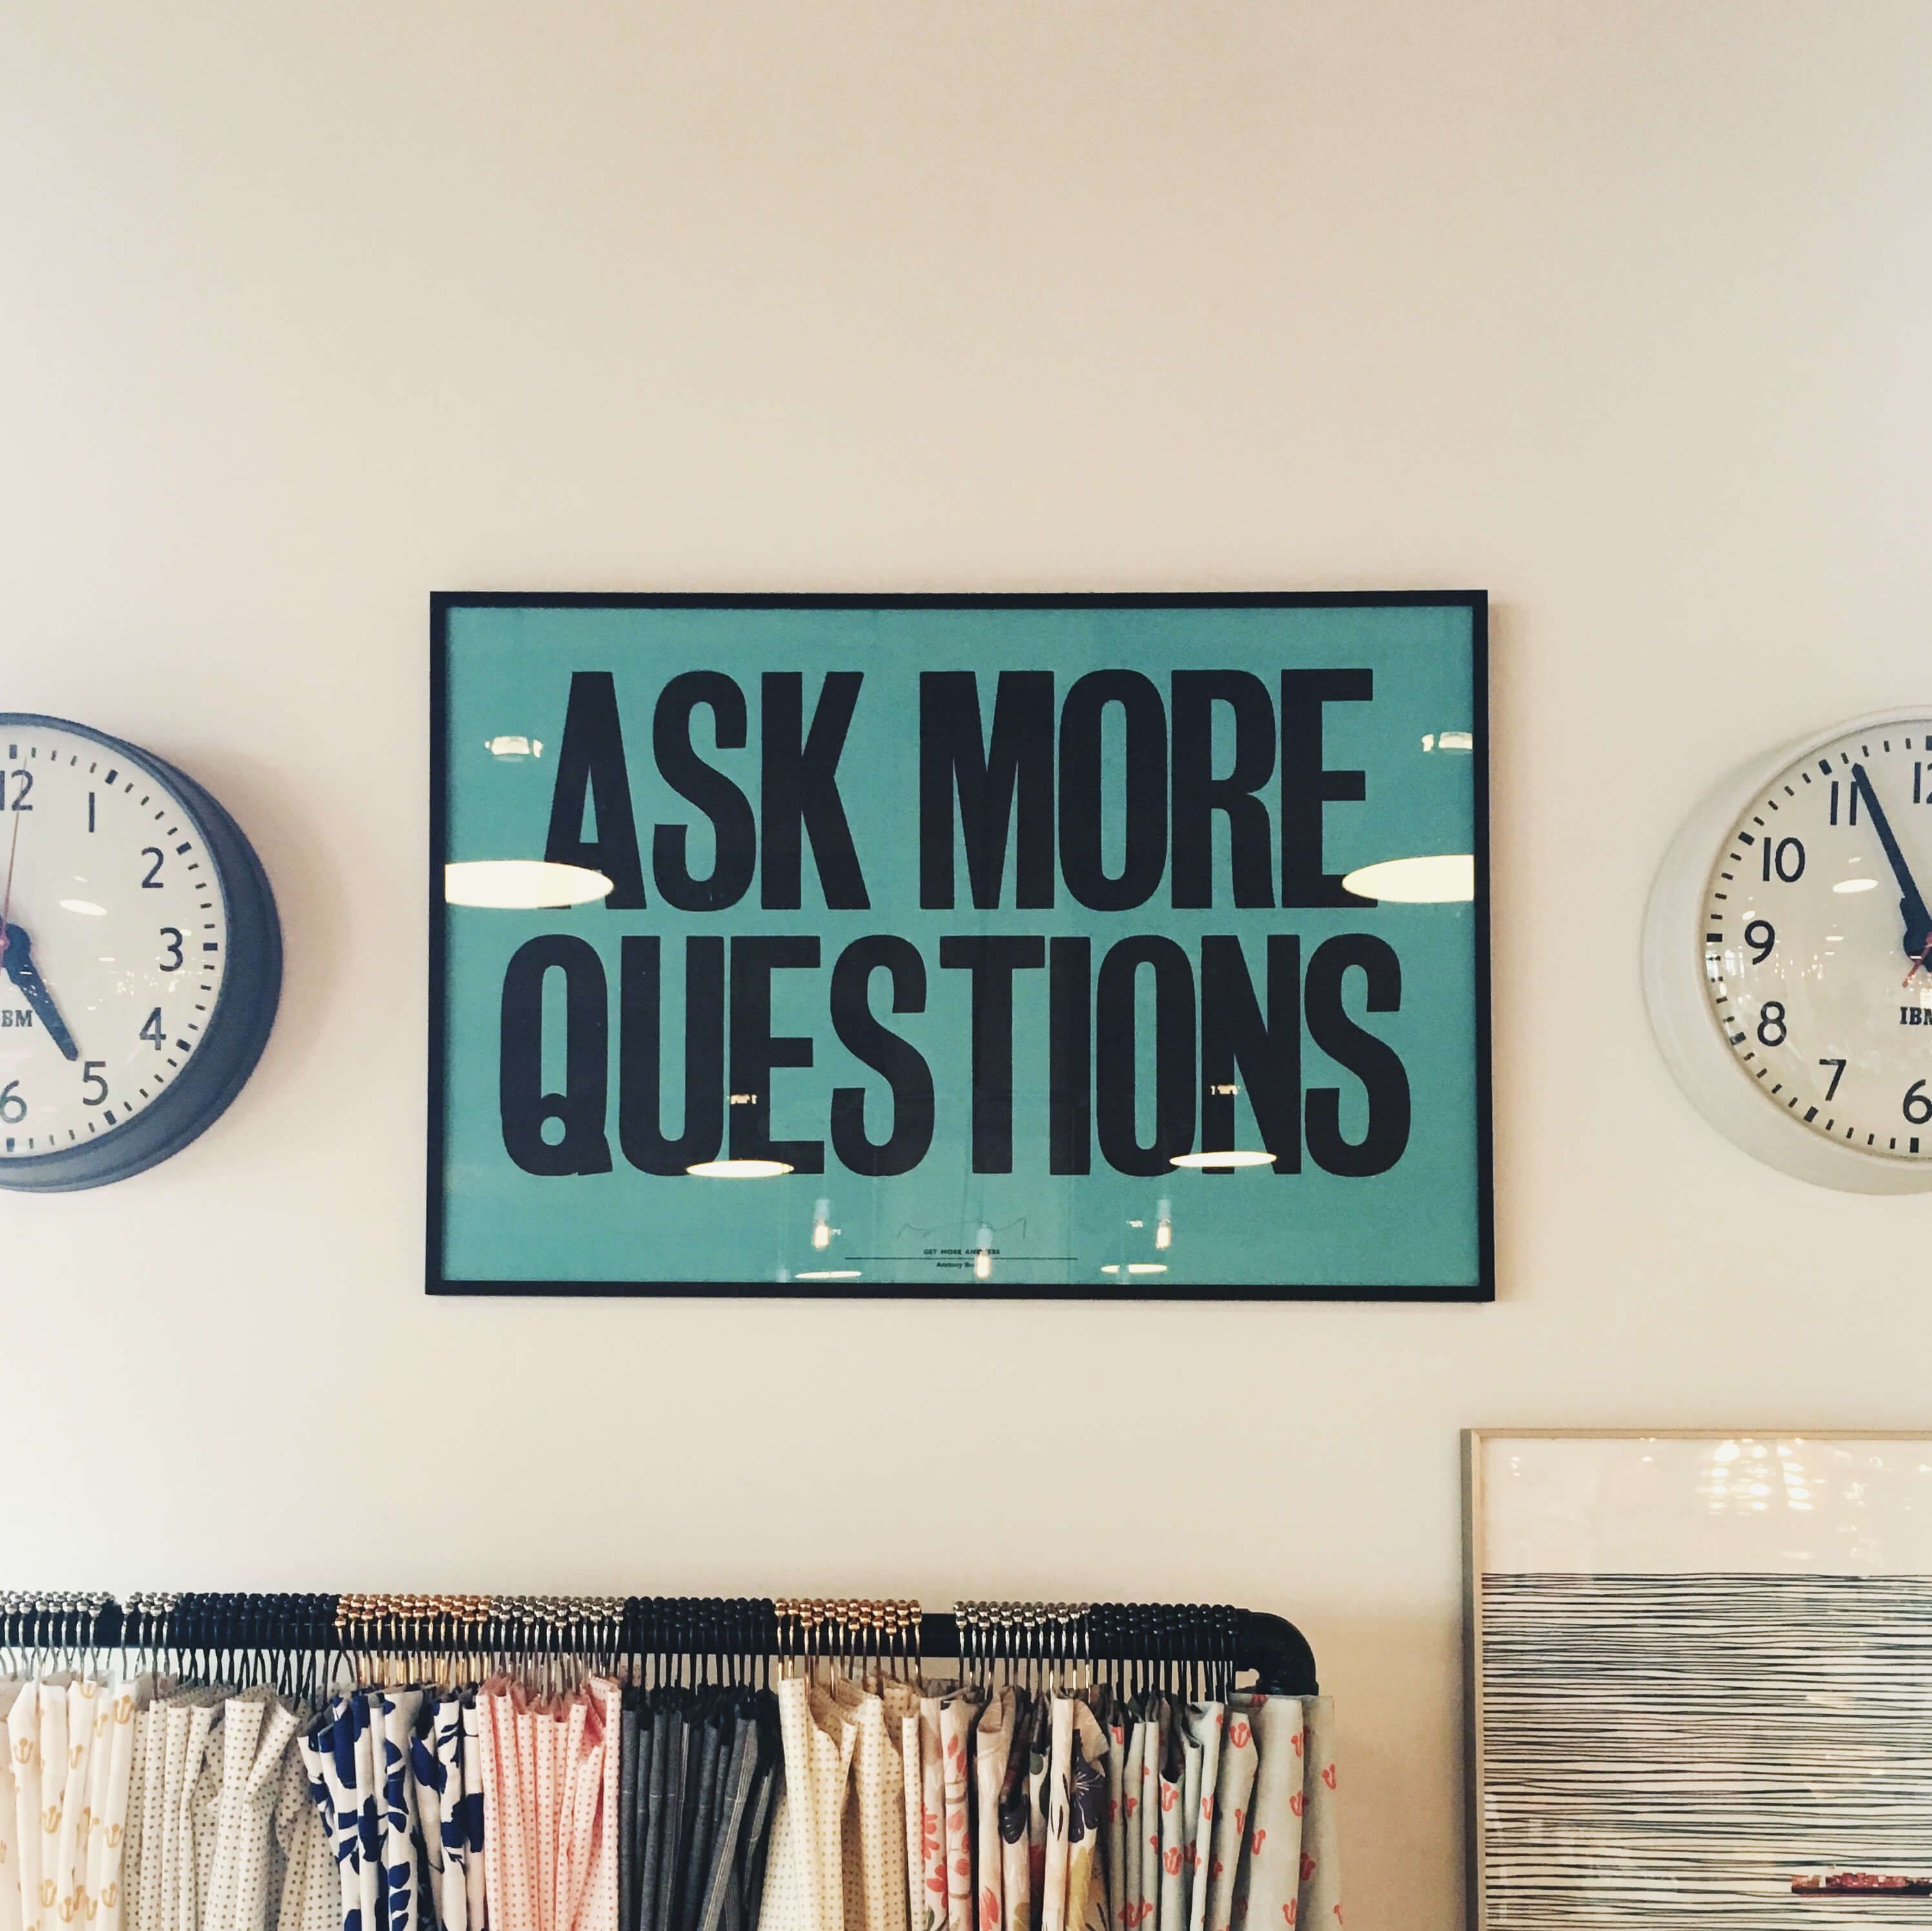 posez plus de questions affiche sur le mur - Comment construire une relation d'affaires - Image